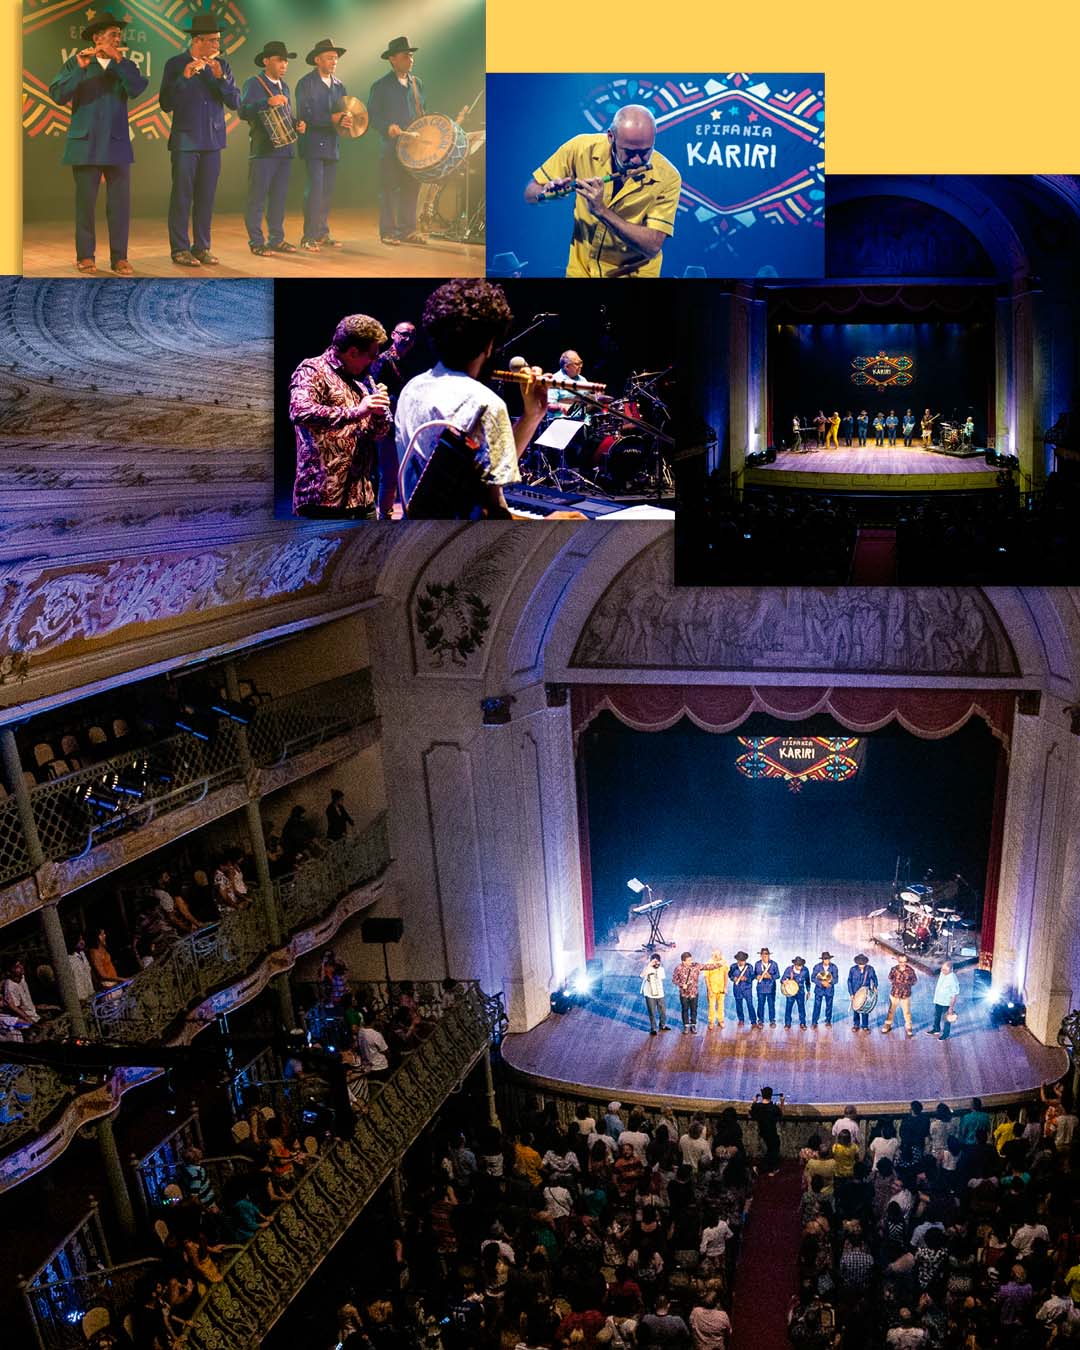 Imagens do espetáculo Epifania Kariri exibindo a Banda dos Irmãos Aniceto, o flautista Carlos Malta e o público em geral no Theatro José de Alencar.